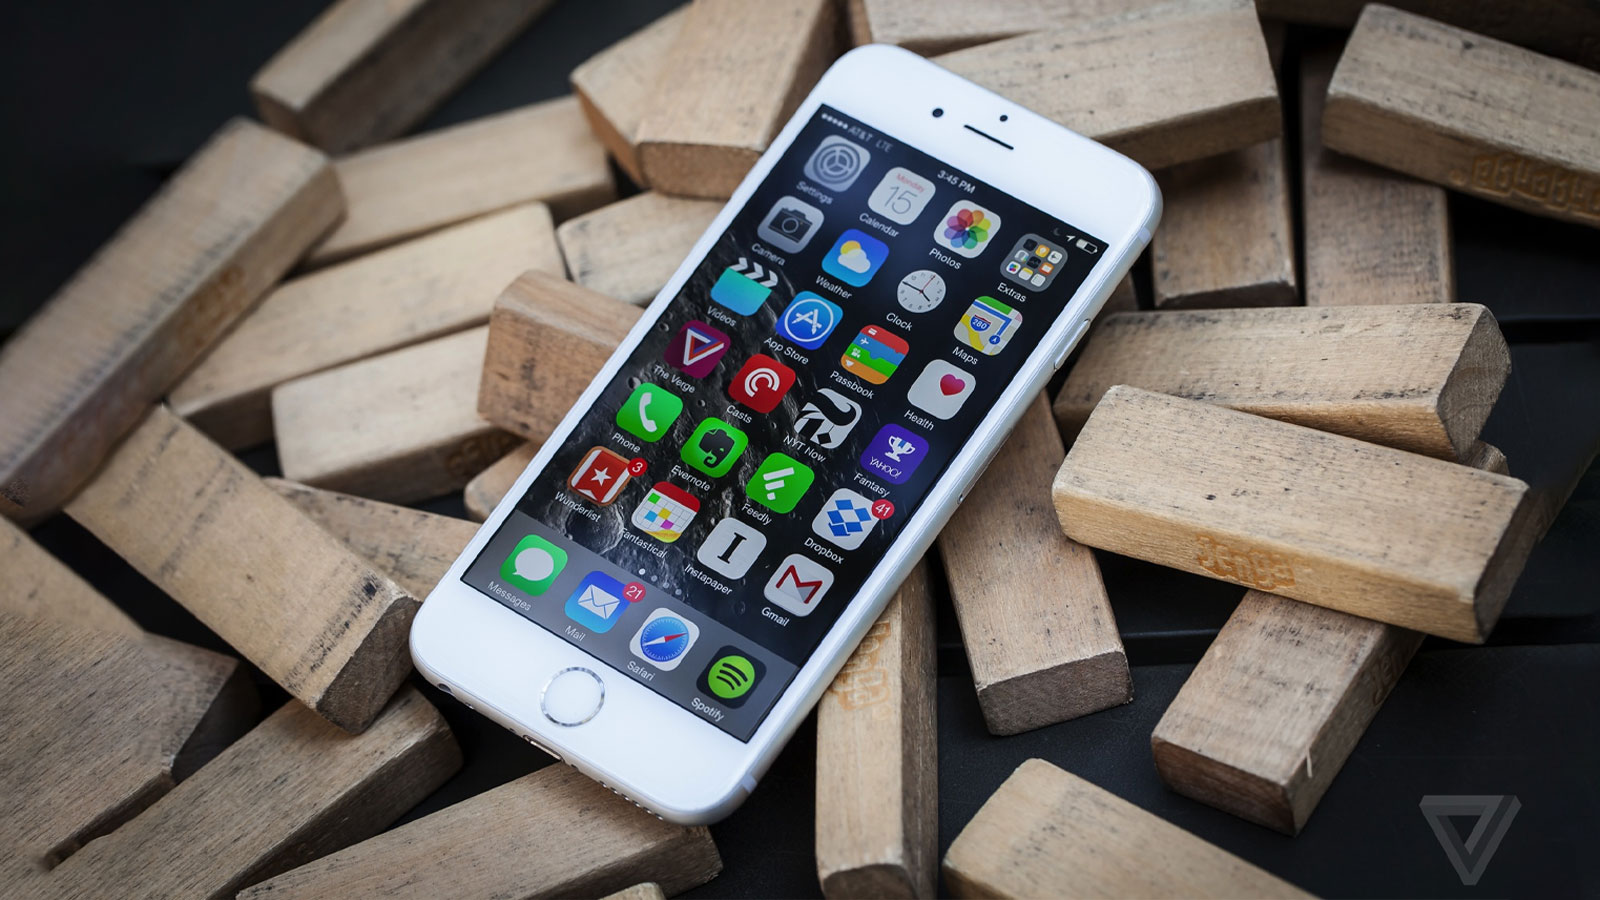 Điện Thoại iPhone 5 Xanh Dương Cũ & Mới Giá Siêu Rẻ